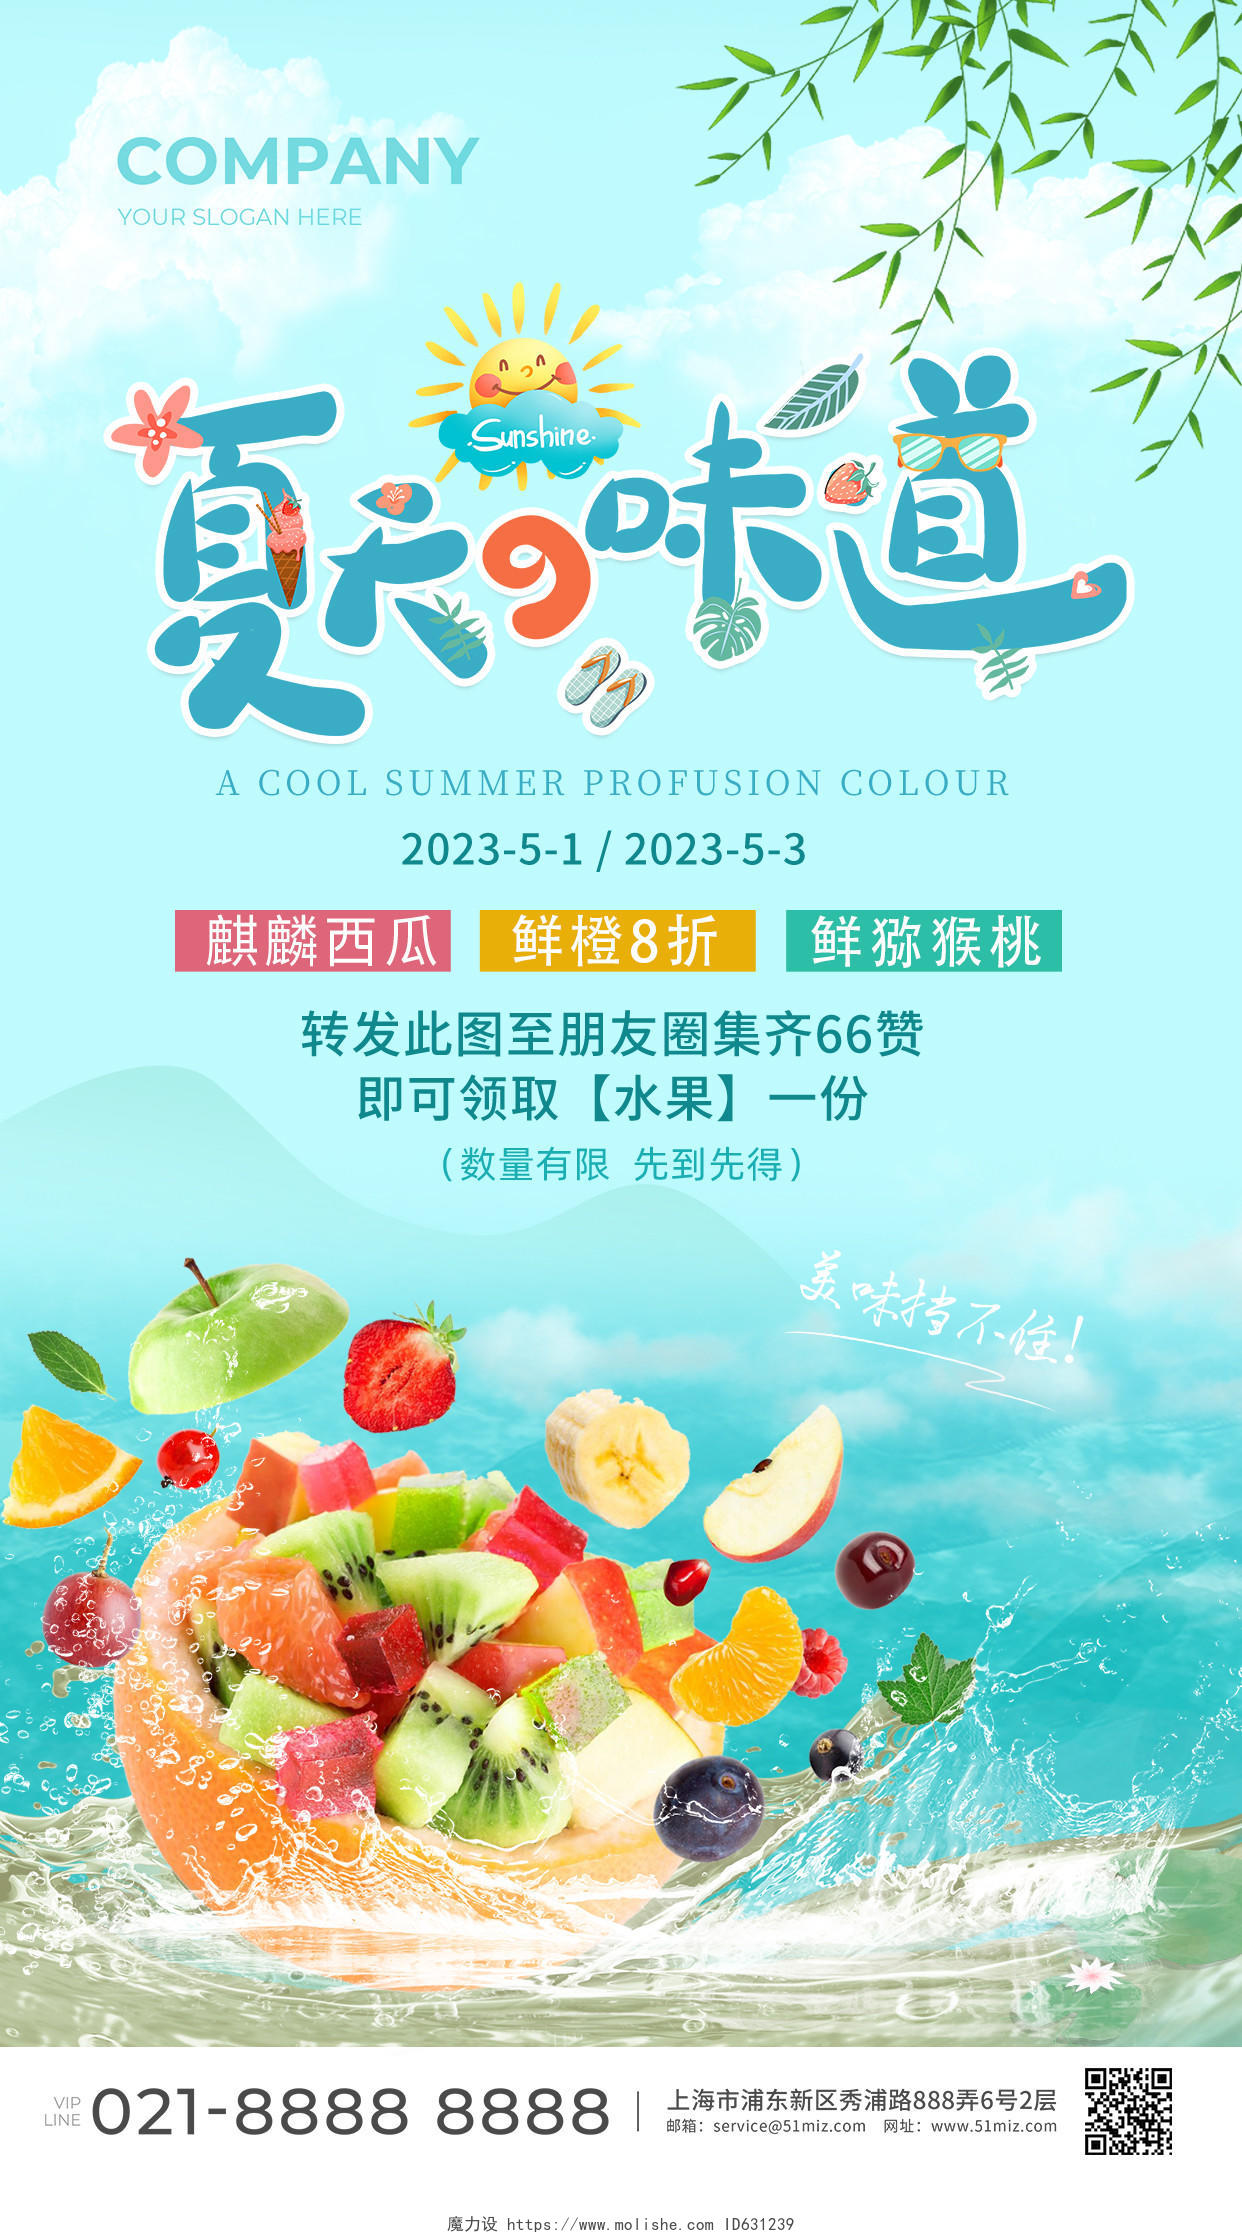 蓝色清新夏天的味道水果活动促销手机文案海报